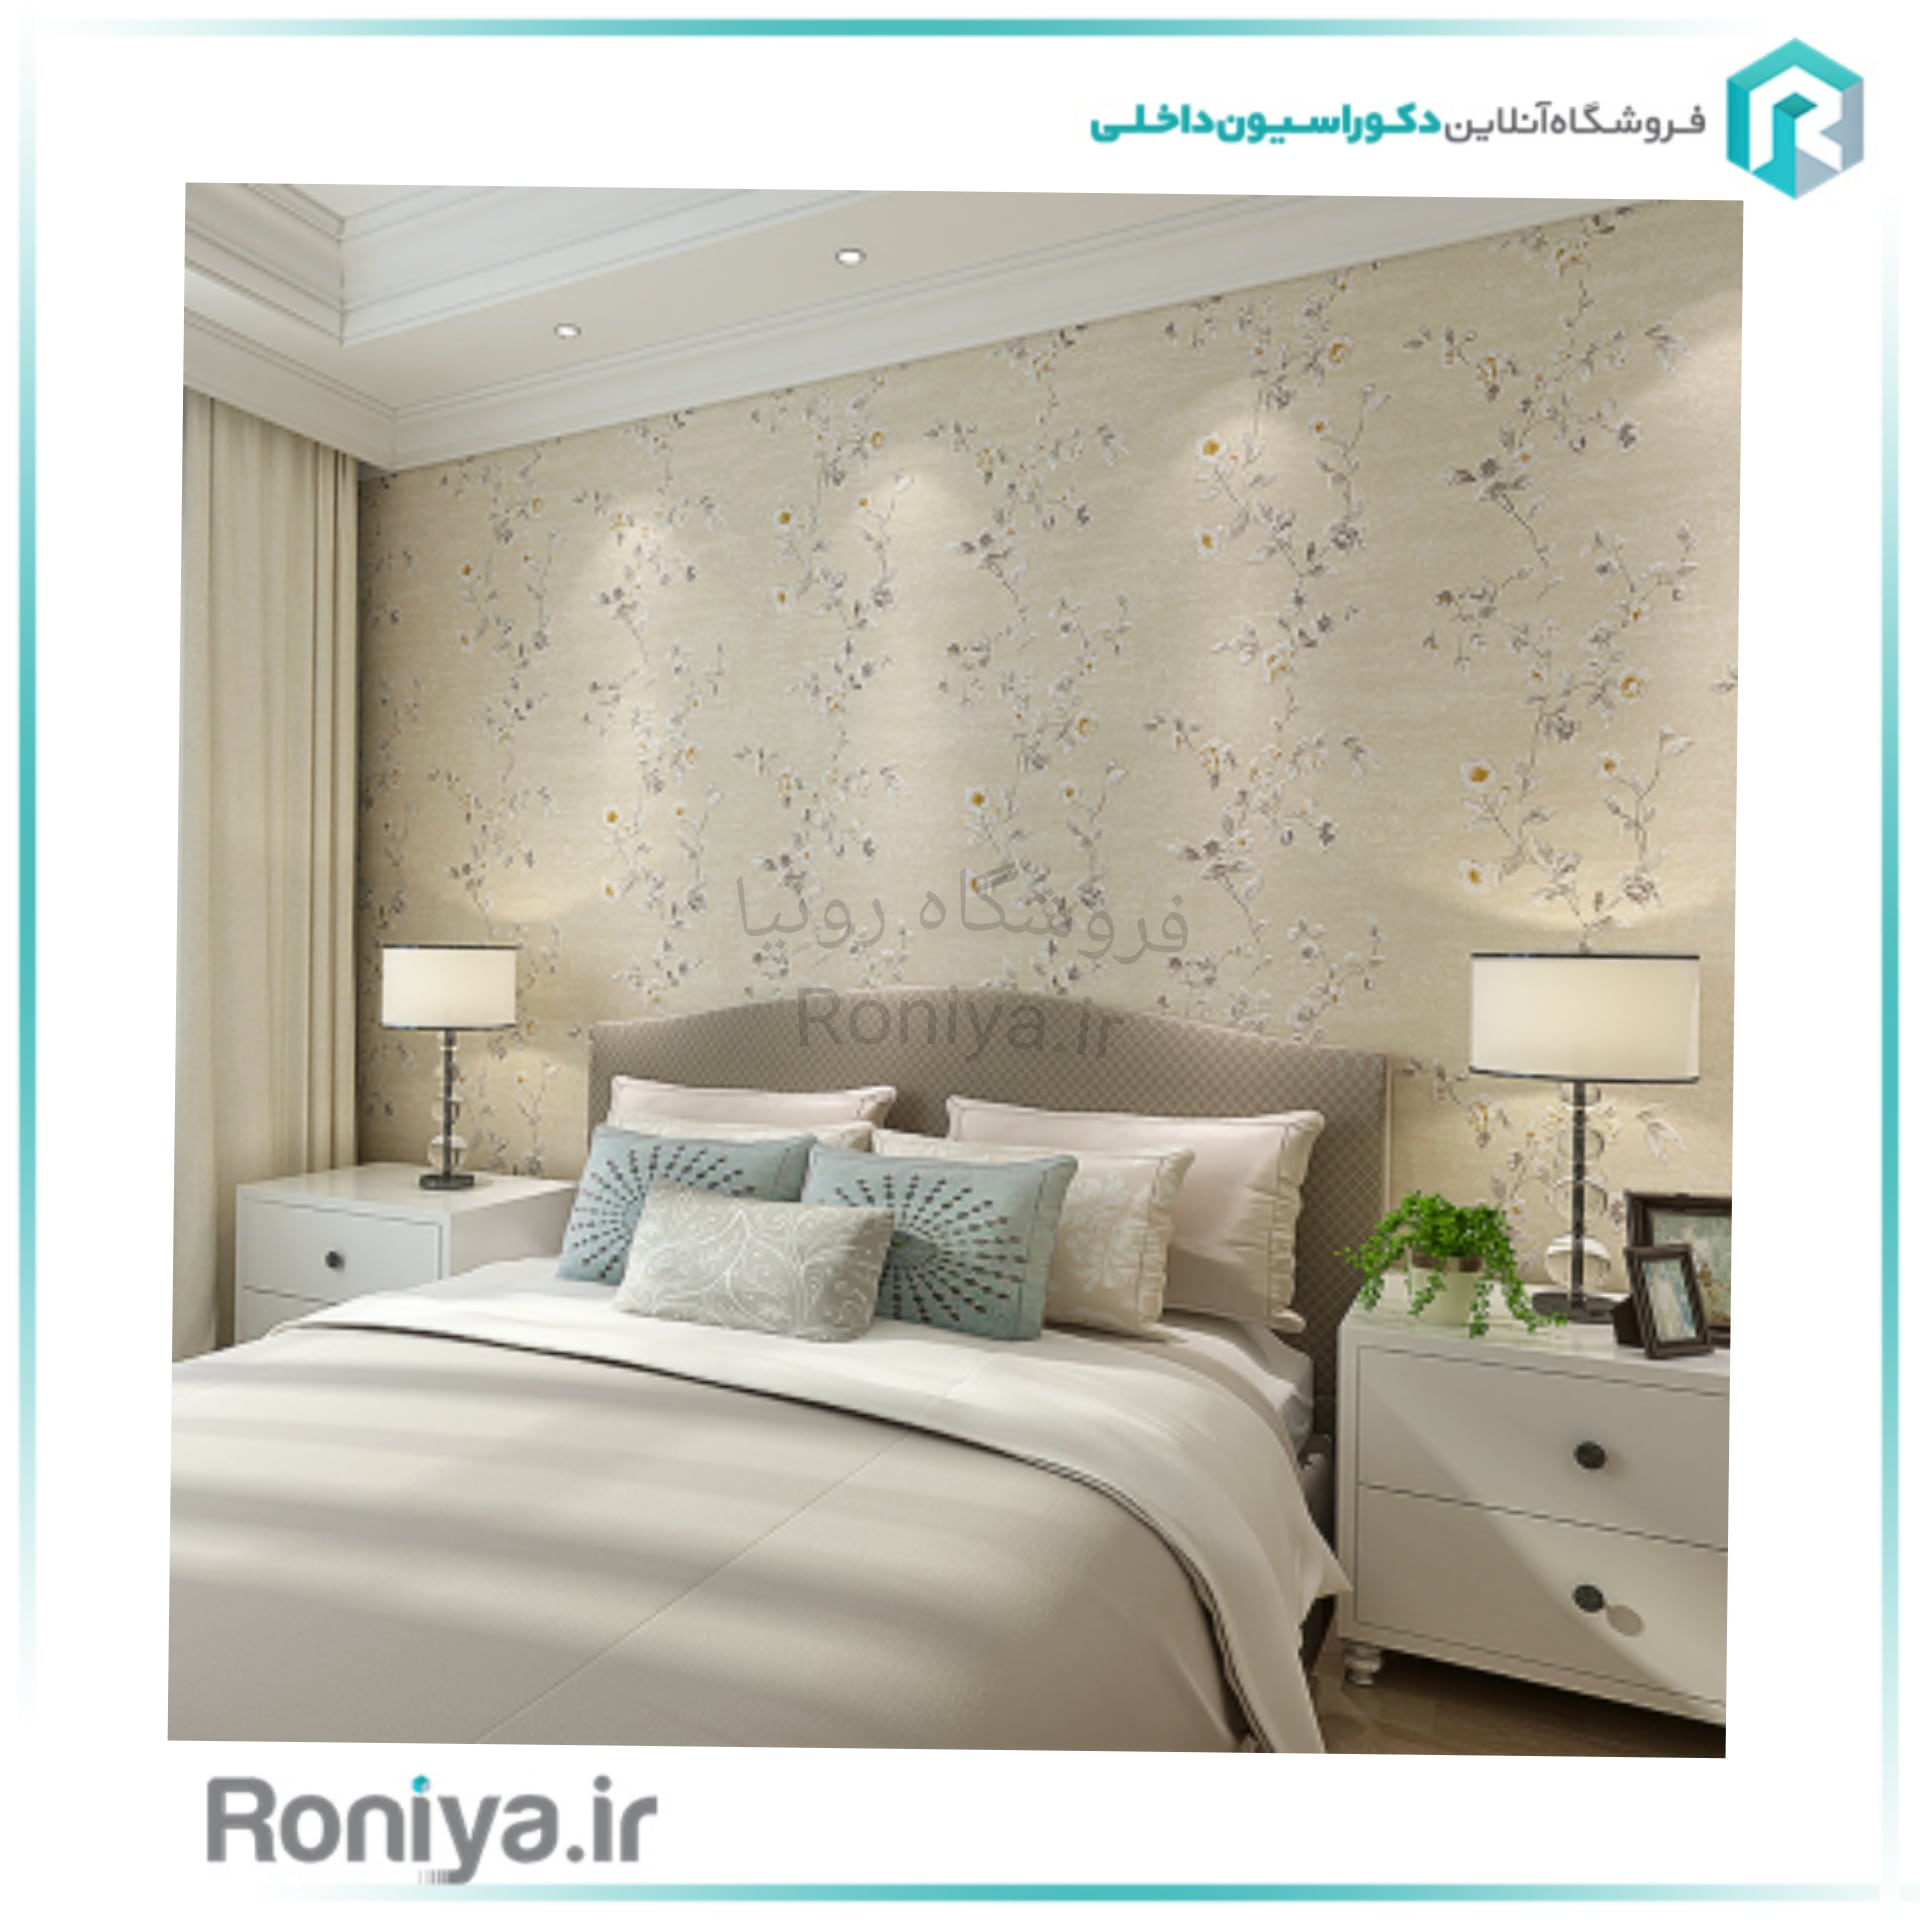 فروش کاغذ دیواری مناسب برای اتاق خواب مستر در شرکت رونیا